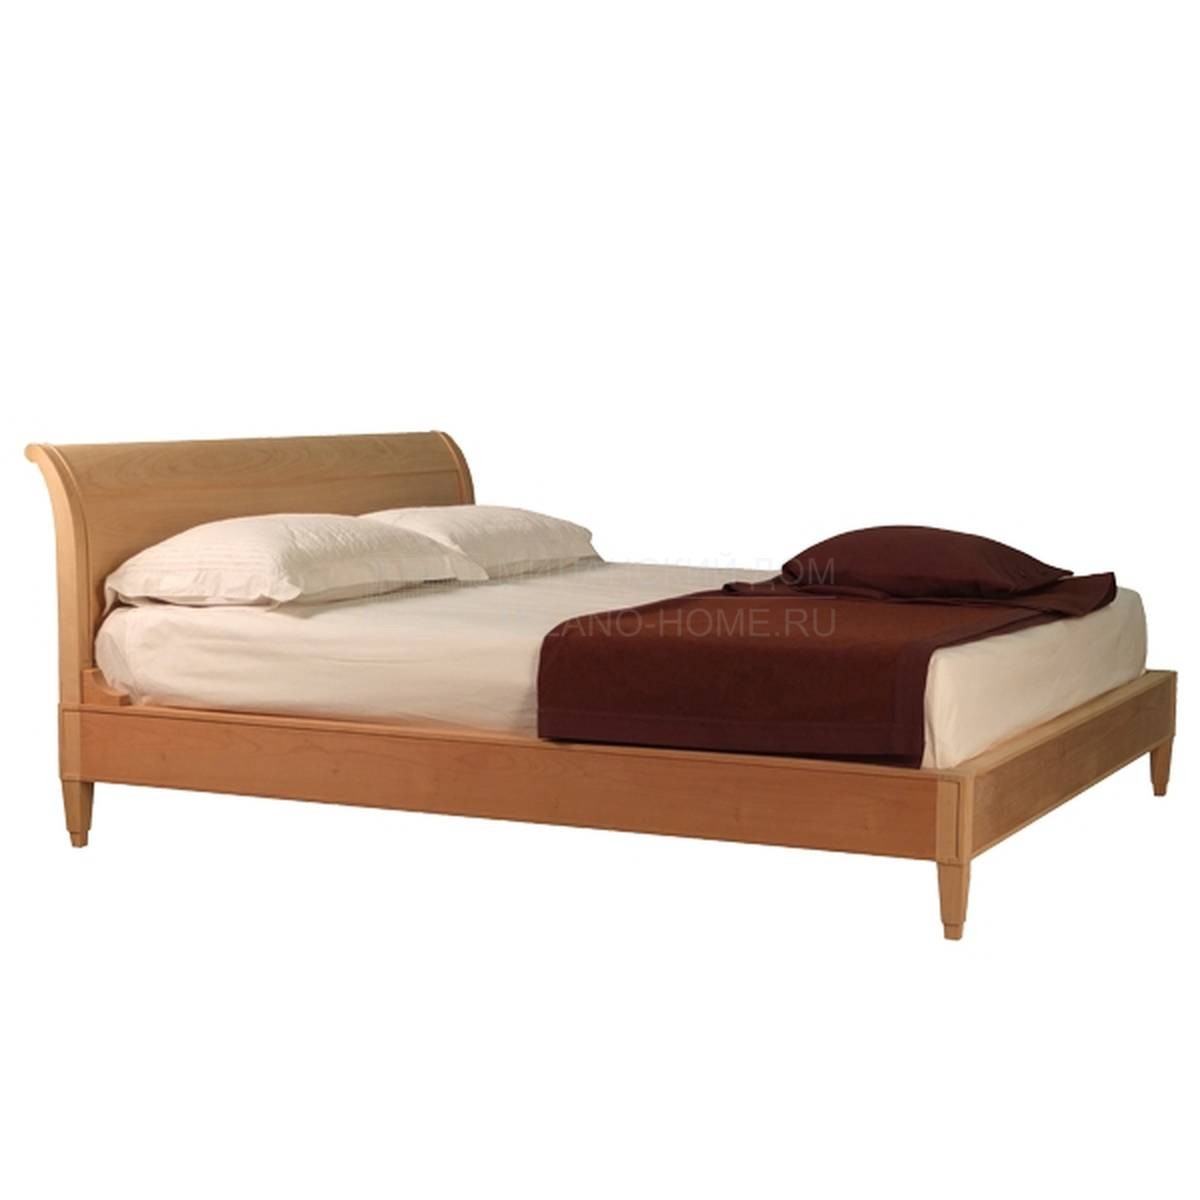 Кровать с деревянным изголовьем Art.2847/Letto Direttorio из Италии фабрики MORELATO